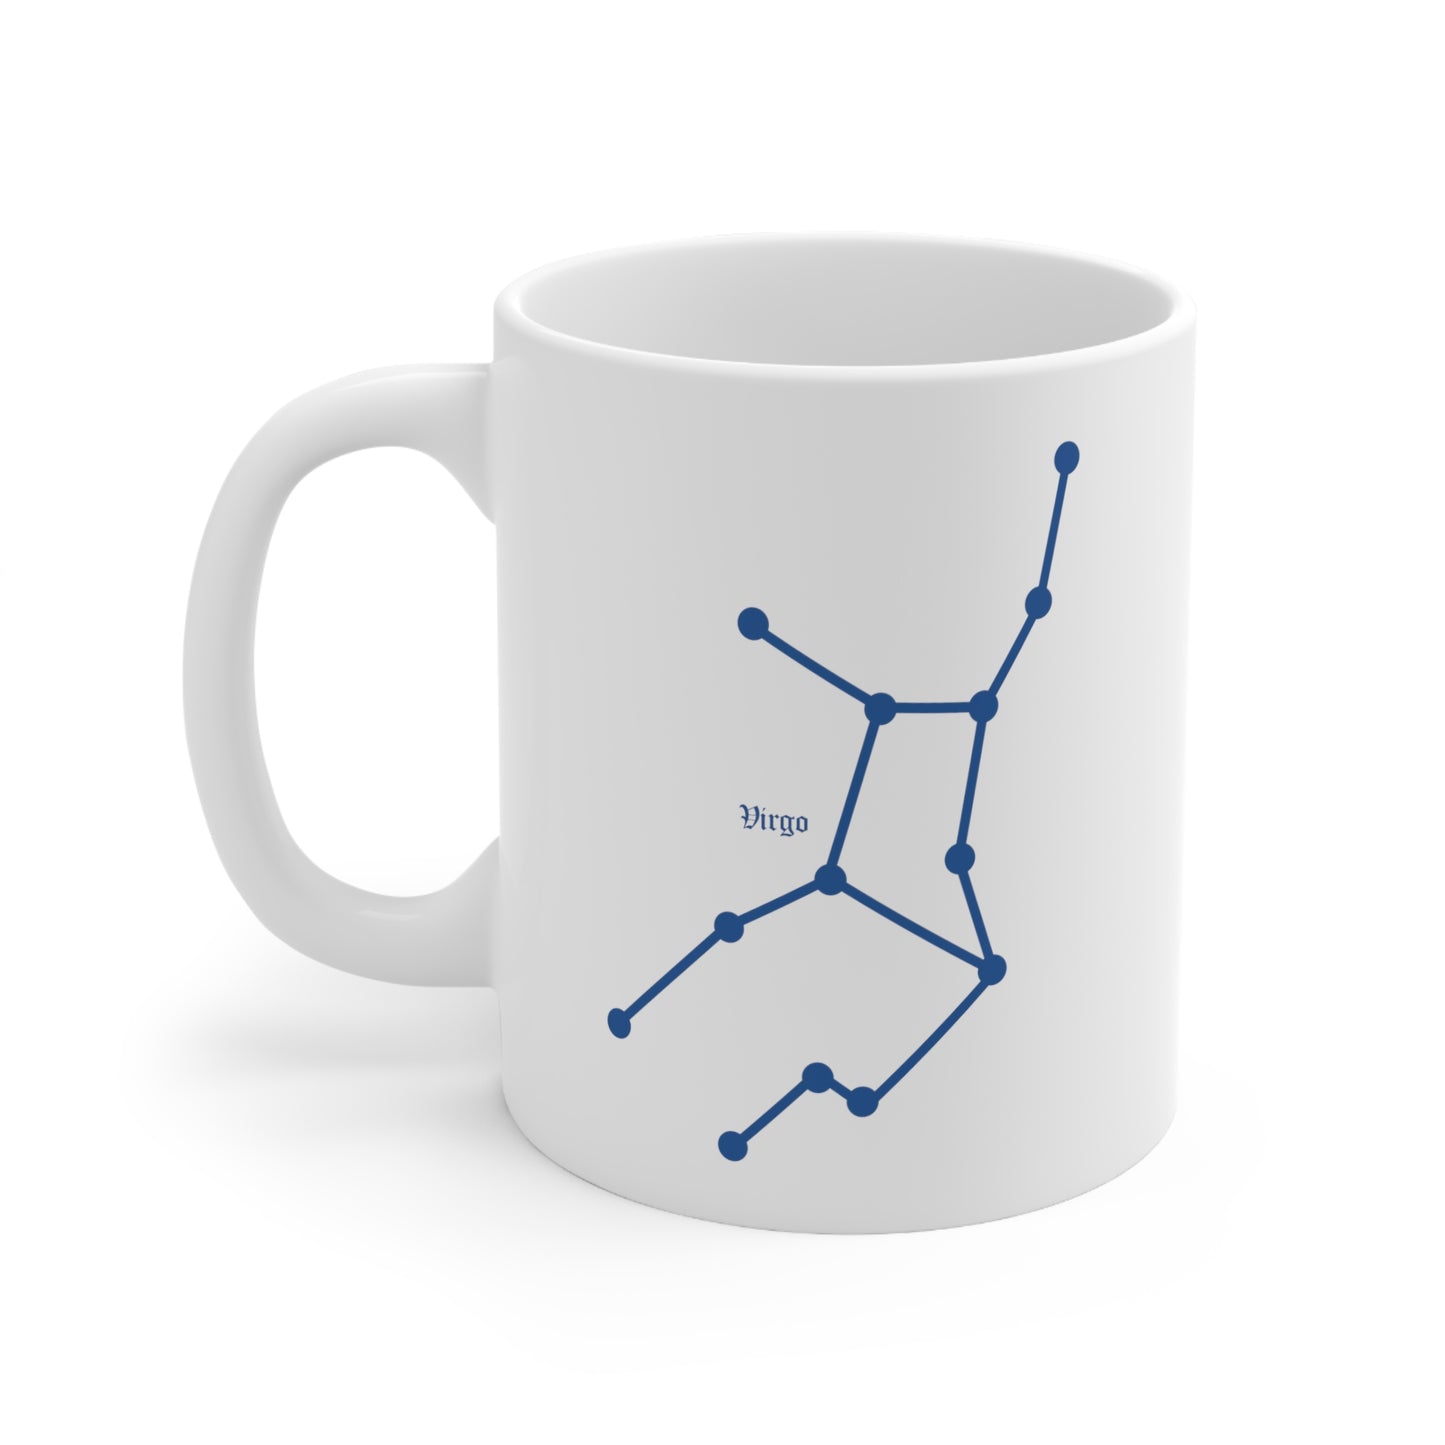 Virgo Constellation Mug